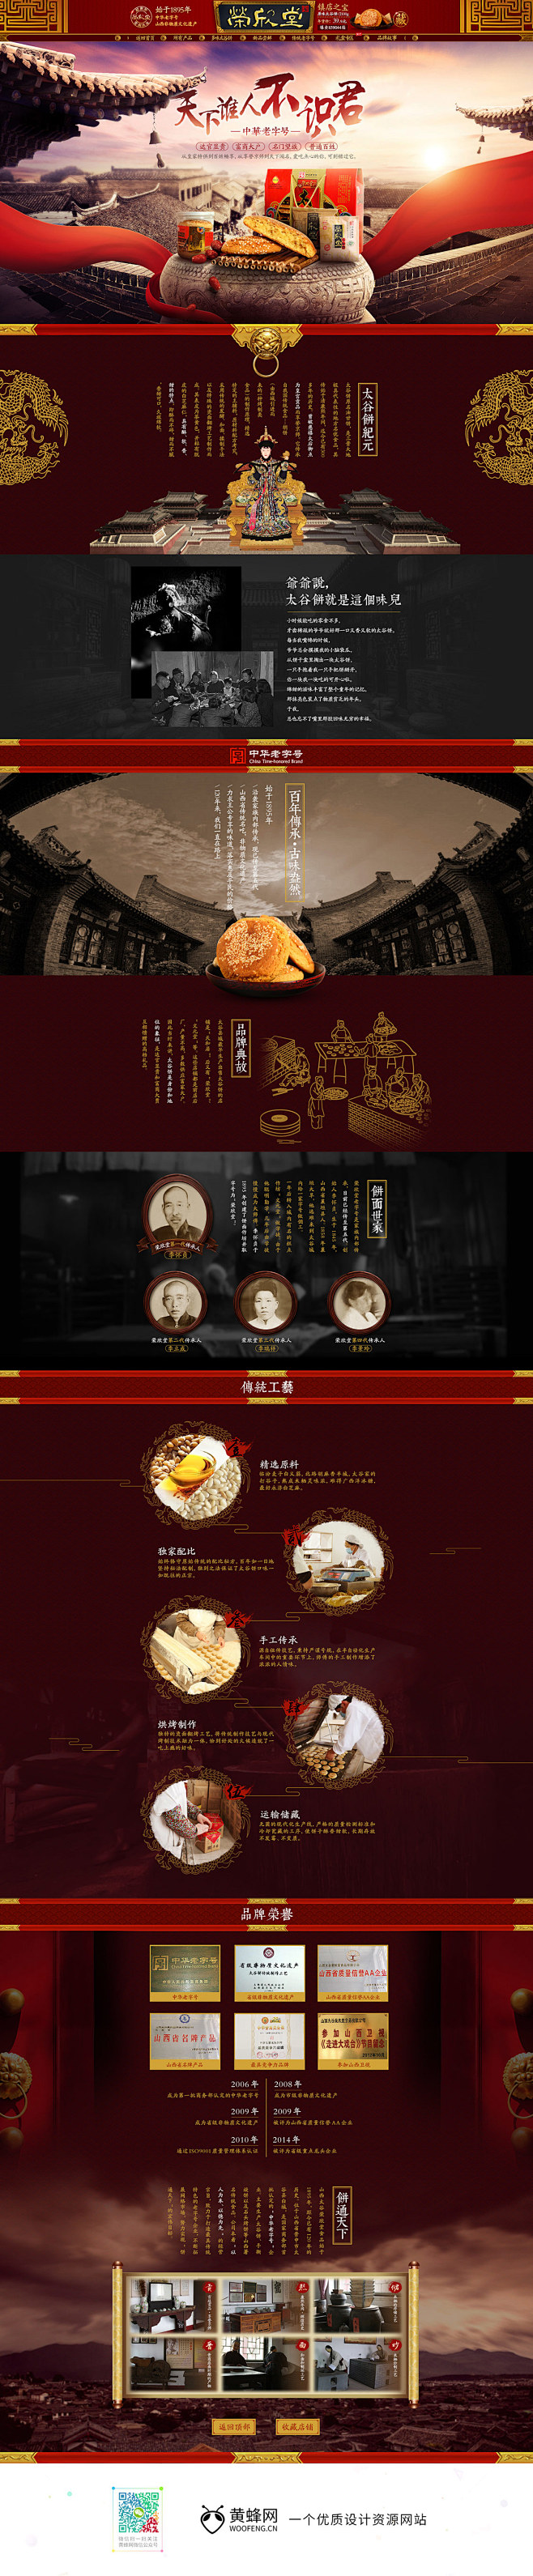 荣欣堂企业文化 古典中国风专题页面设计 ...